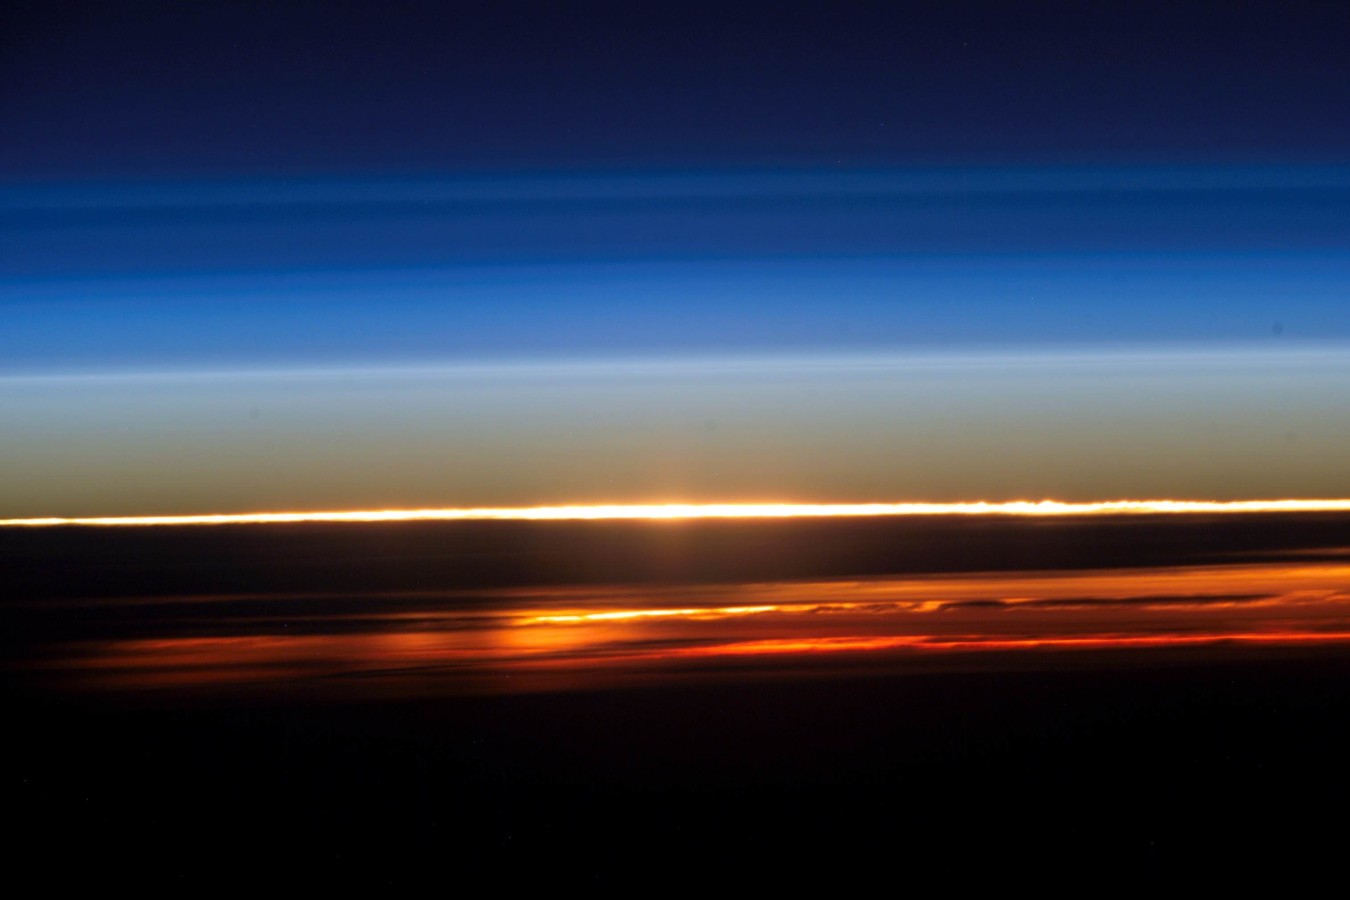 Sonnenuntergang auf der Erde von der ISS gesehen